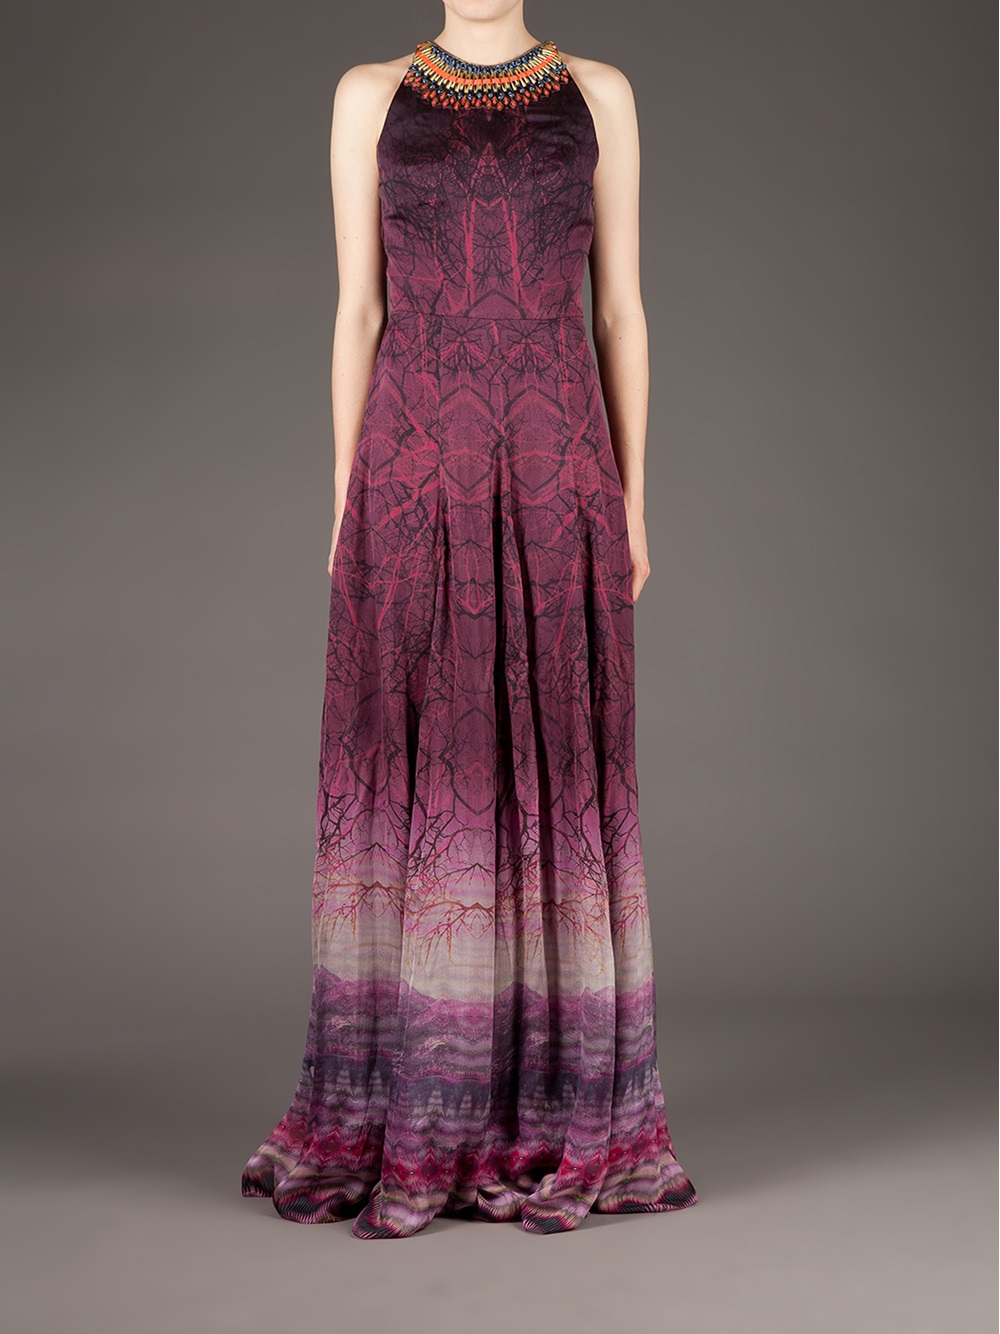 Lyst - Matthew Williamson Printed Halter Neck Gown in Purple